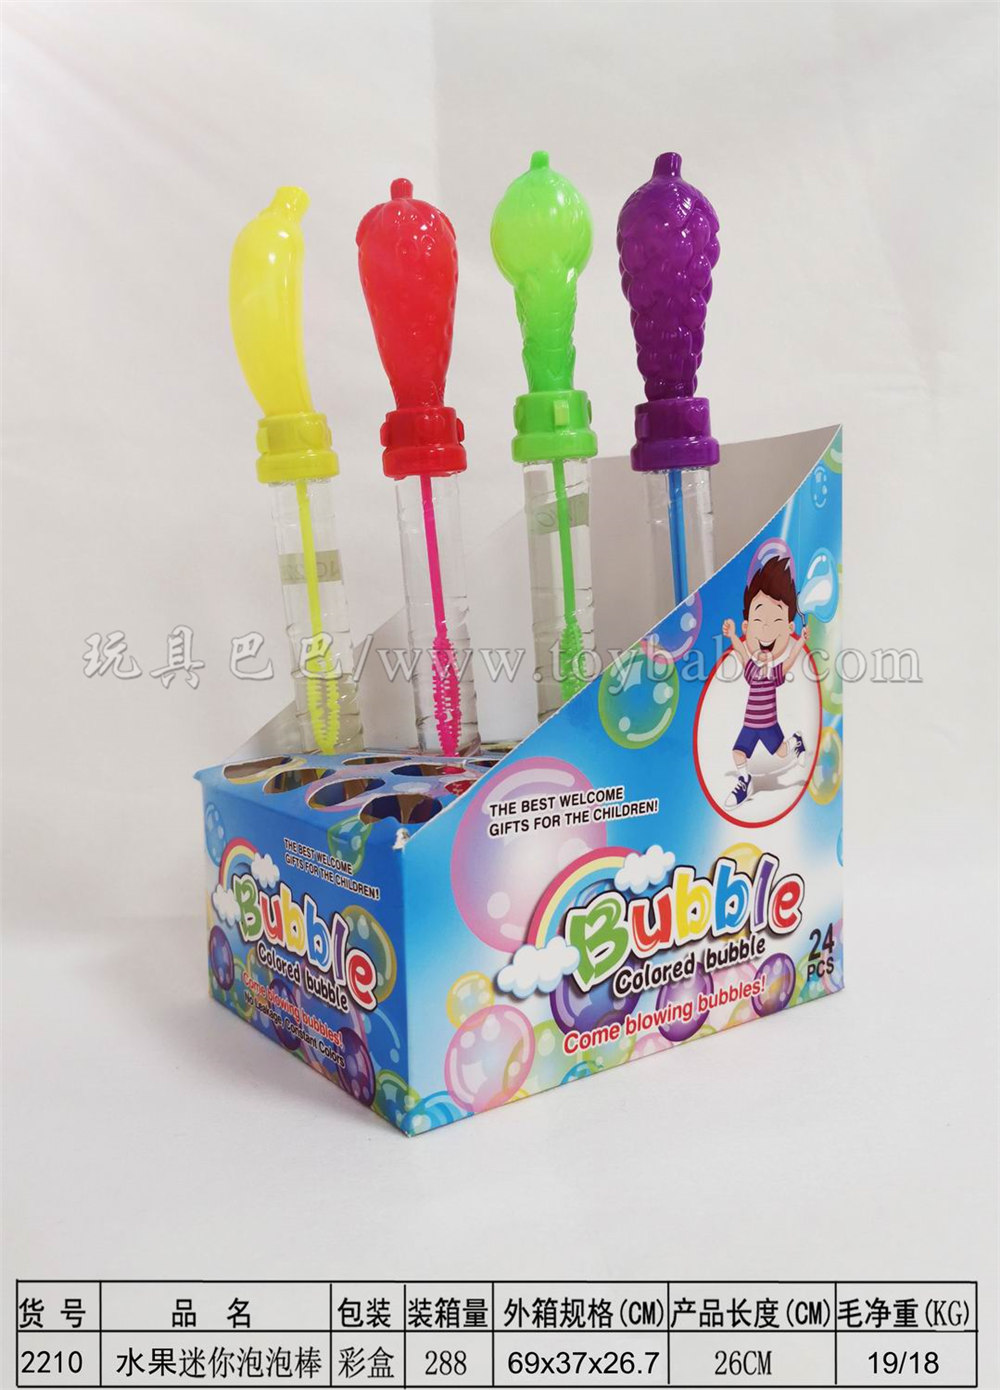 26cm fruit bubble stick 24pcs / box (4 colors)